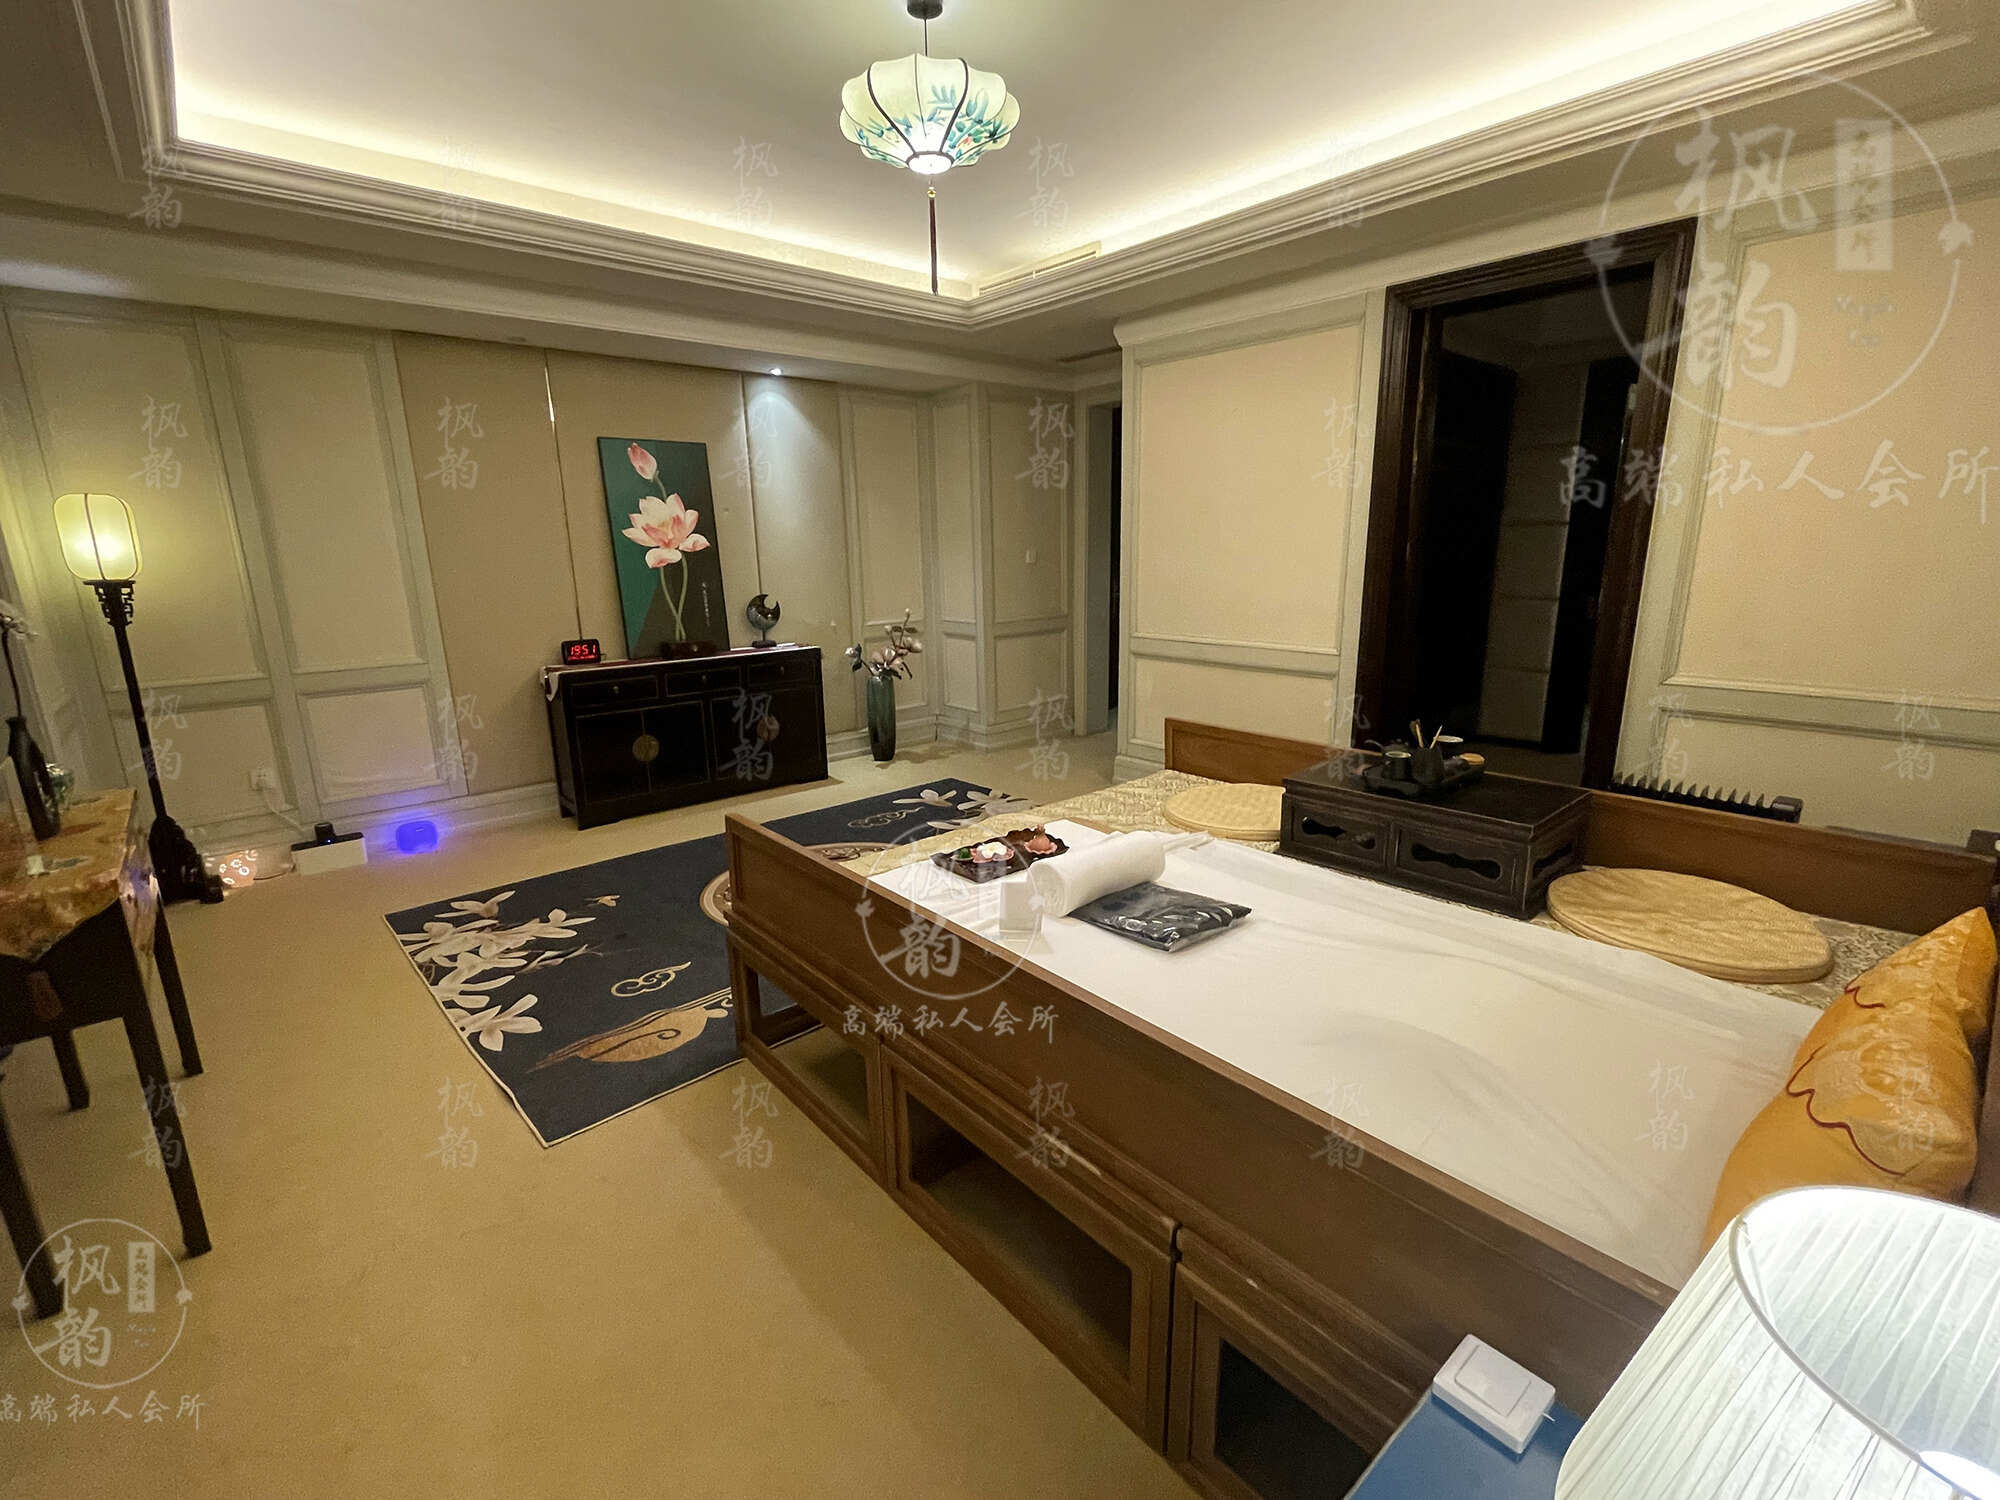 自贡天津渔阳鼓楼人气优选沐足会馆房间也很干净，舒适的spa体验